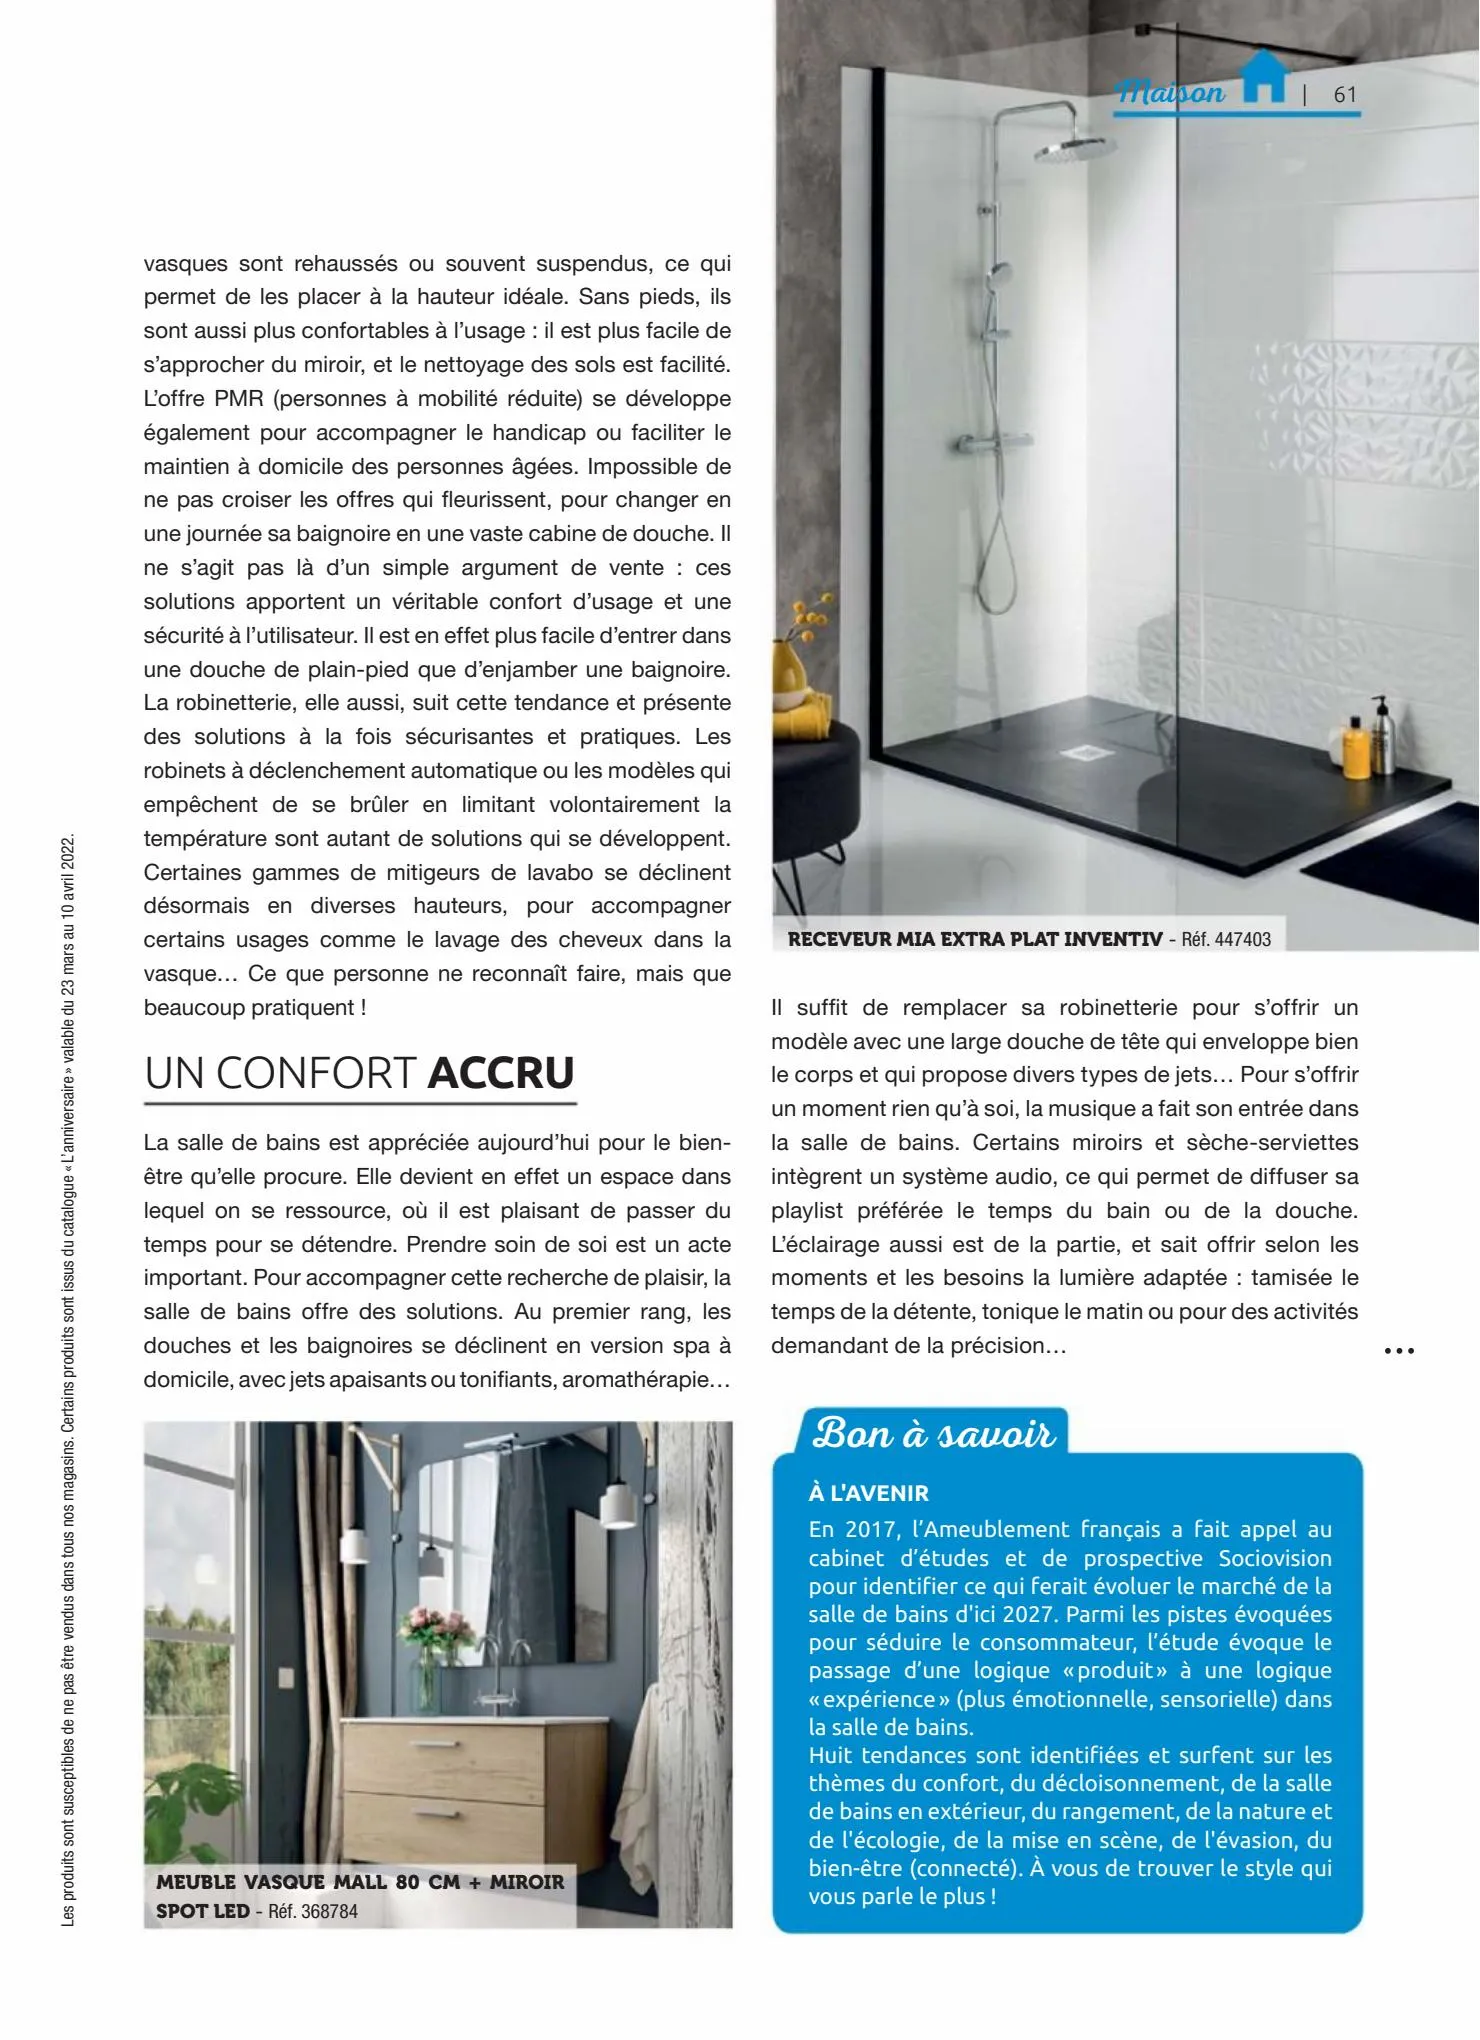 Catalogue Entre Voisins Magazine, page 00061